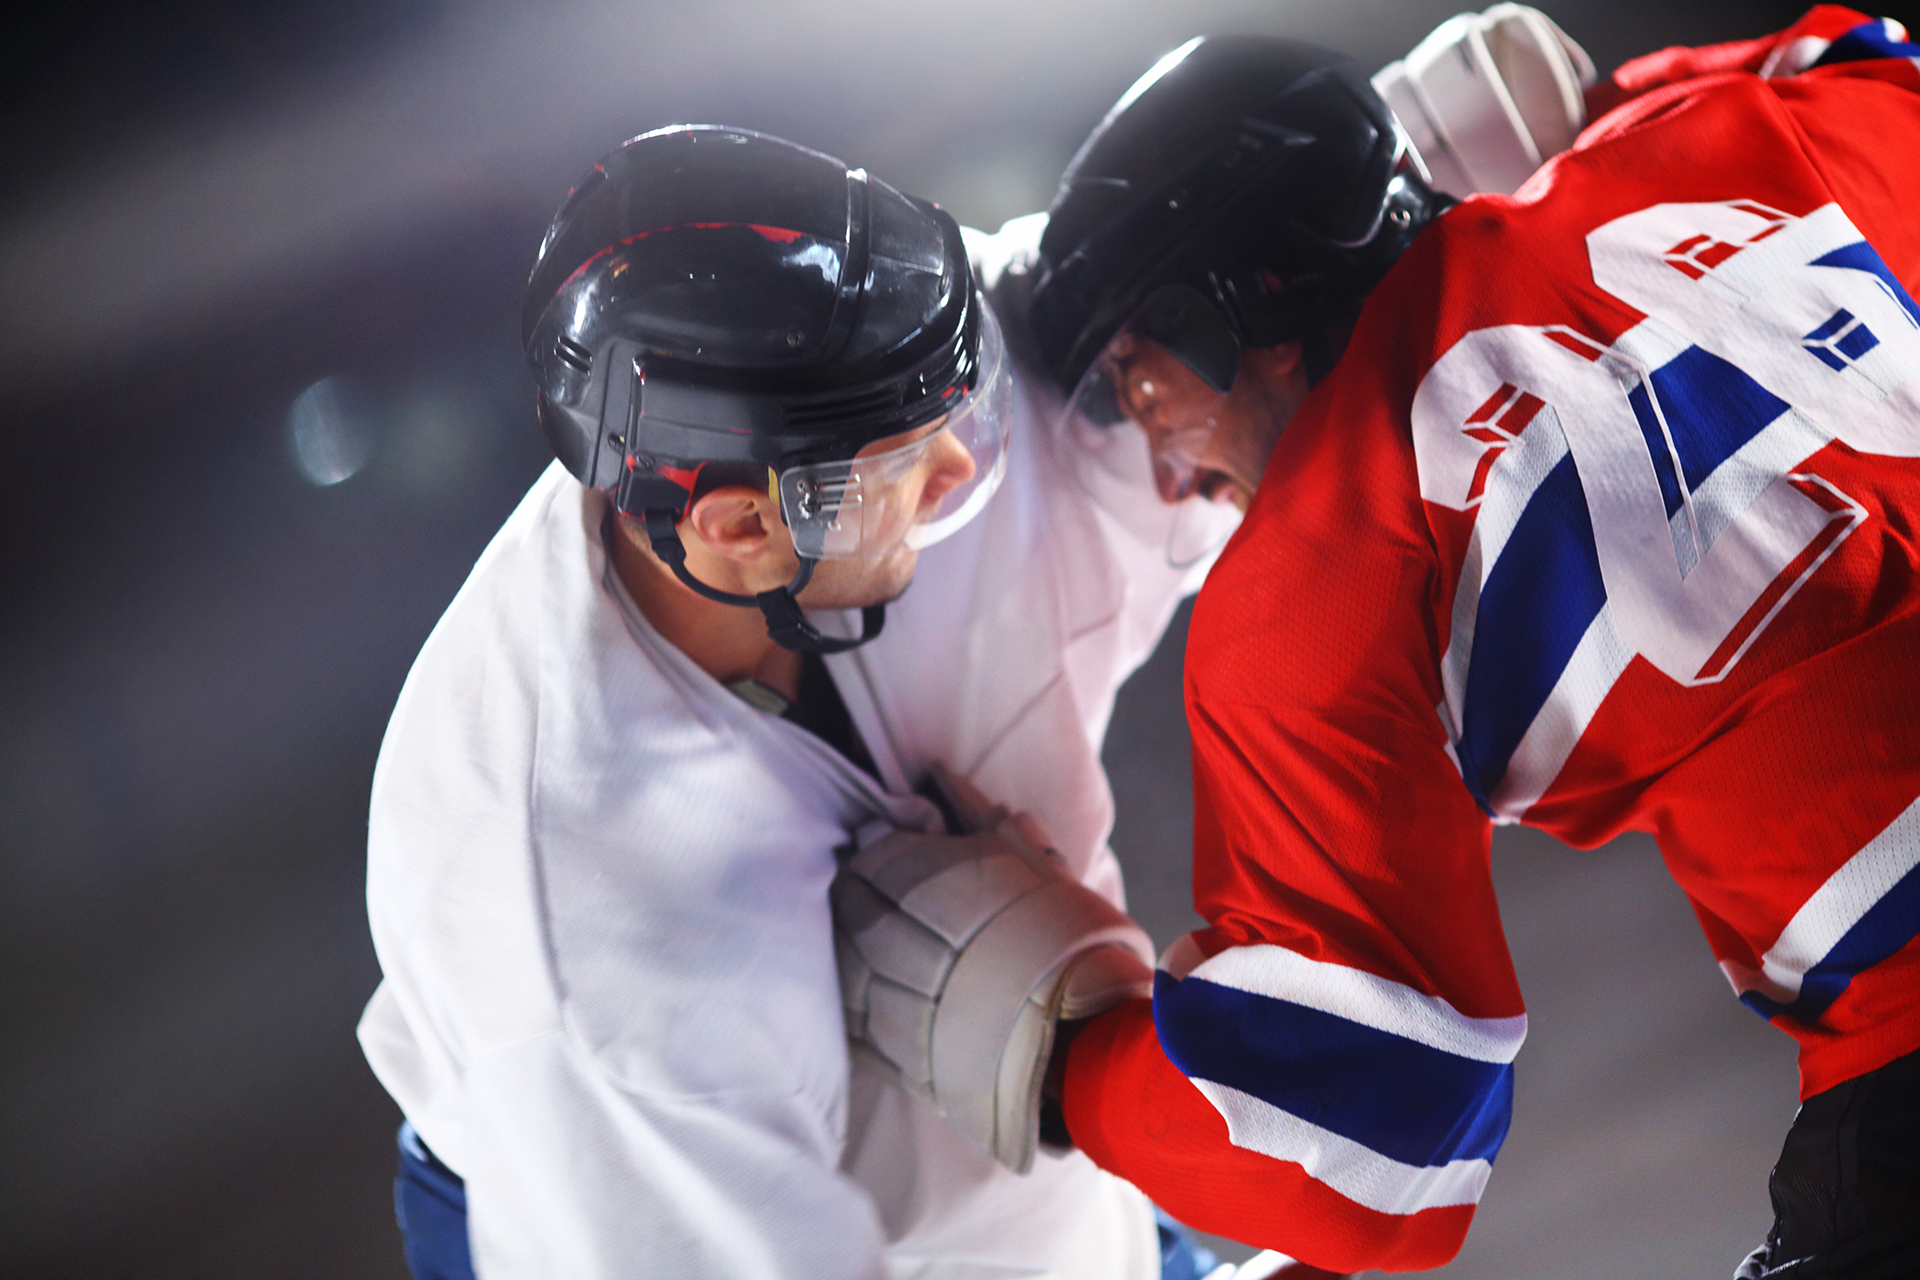 LNW-hockey-brawl